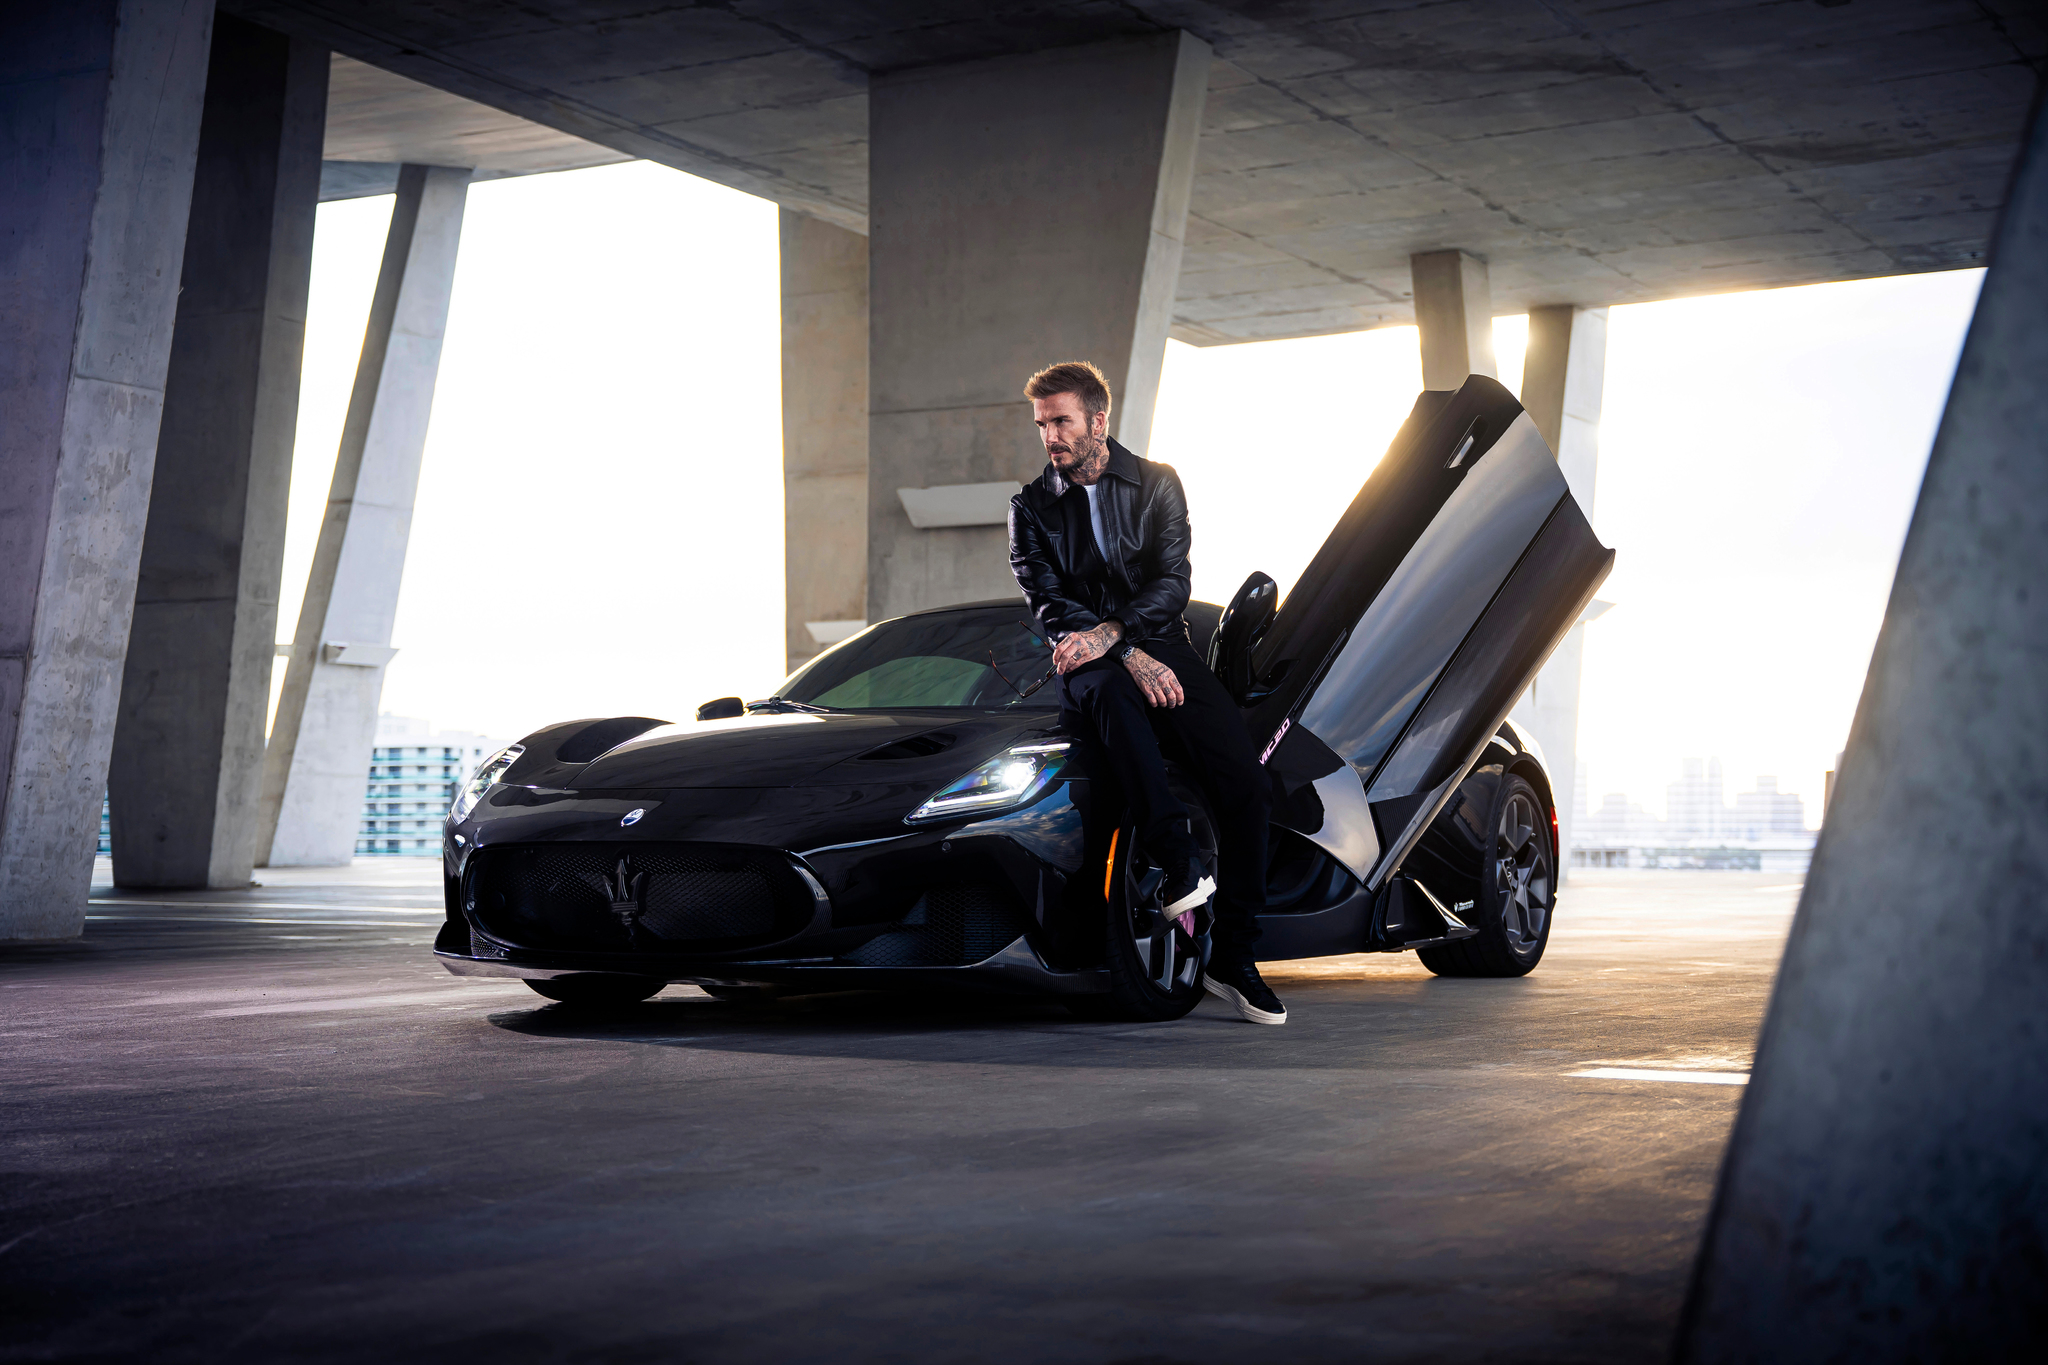 David Beckham - Maserati MC20 Fuoriserie Edition - deportivo  - centro stile - personalizacion